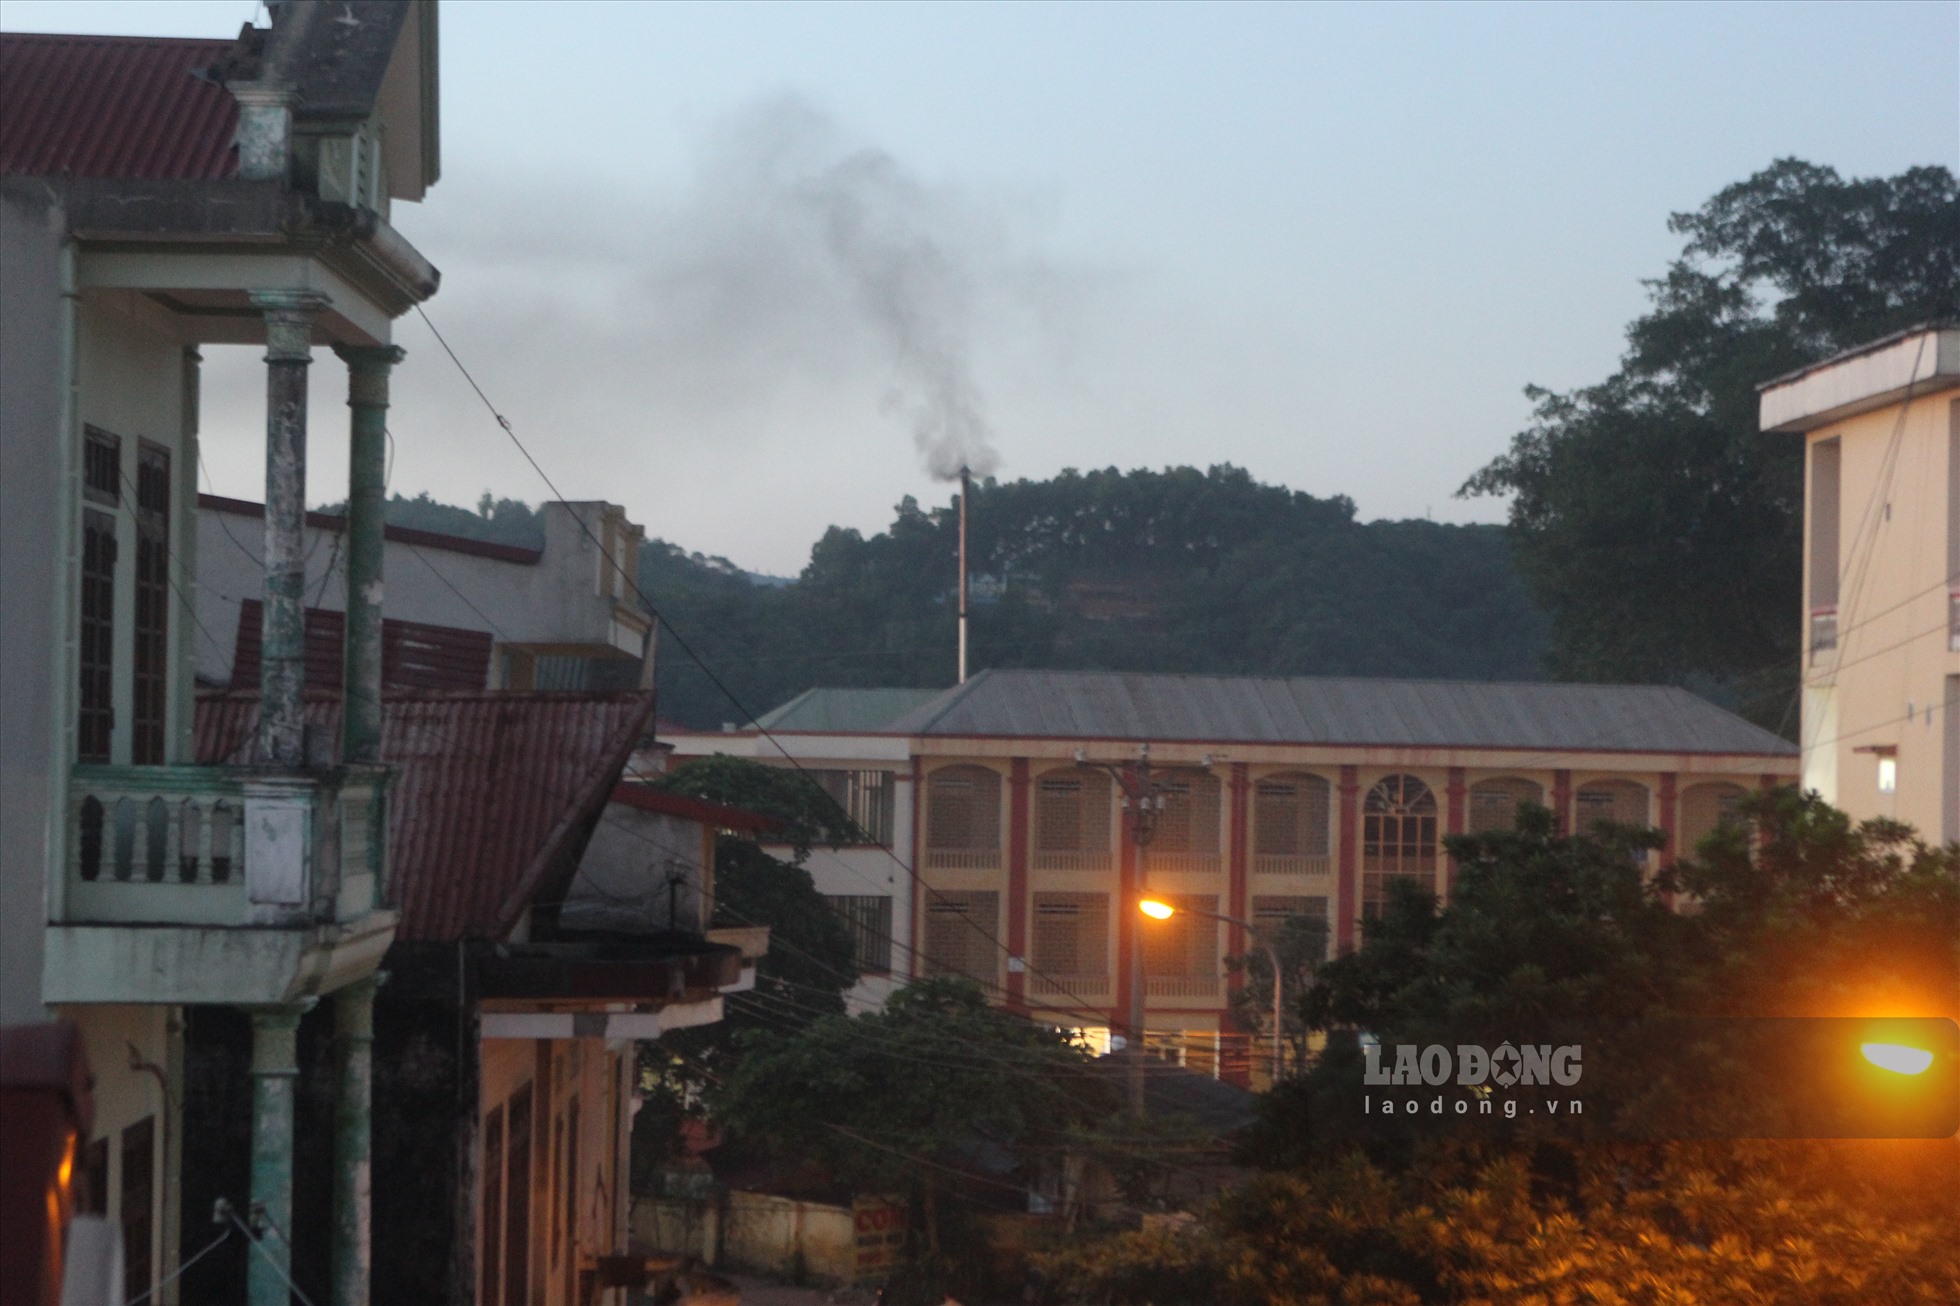 Lò đốt rác y tế phía sau Bệnh viện Tâm thần nằm ngay sát khu dân cư khiến nhiều người dân lo lắng cho sức khỏe.